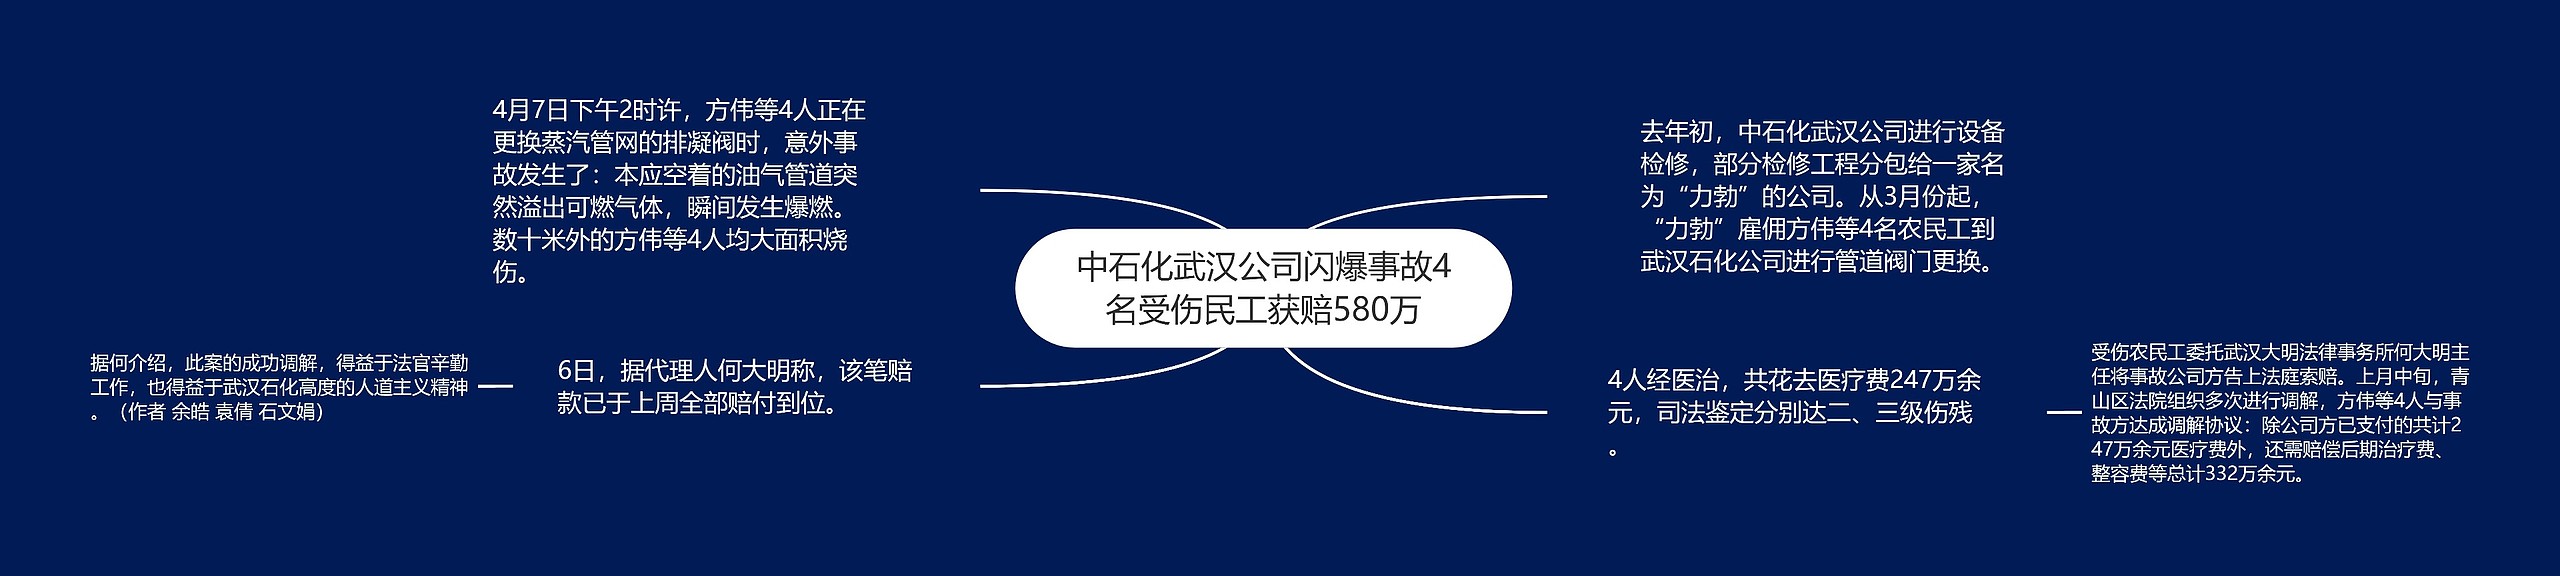 中石化武汉公司闪爆事故4名受伤民工获赔580万